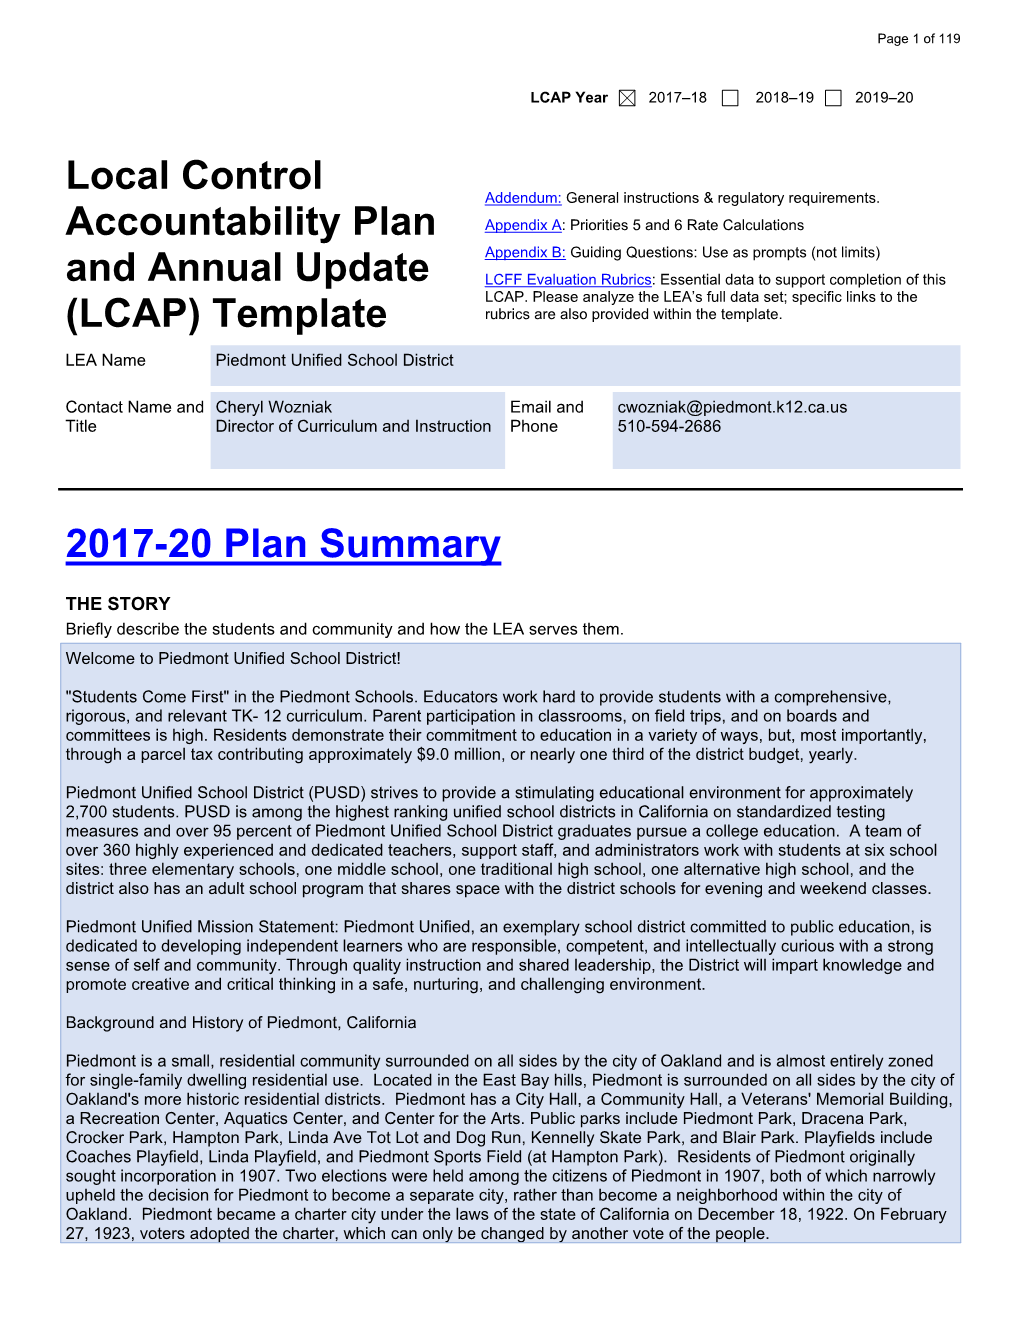 2017-20 LCAP & 2016-17 Annual Update